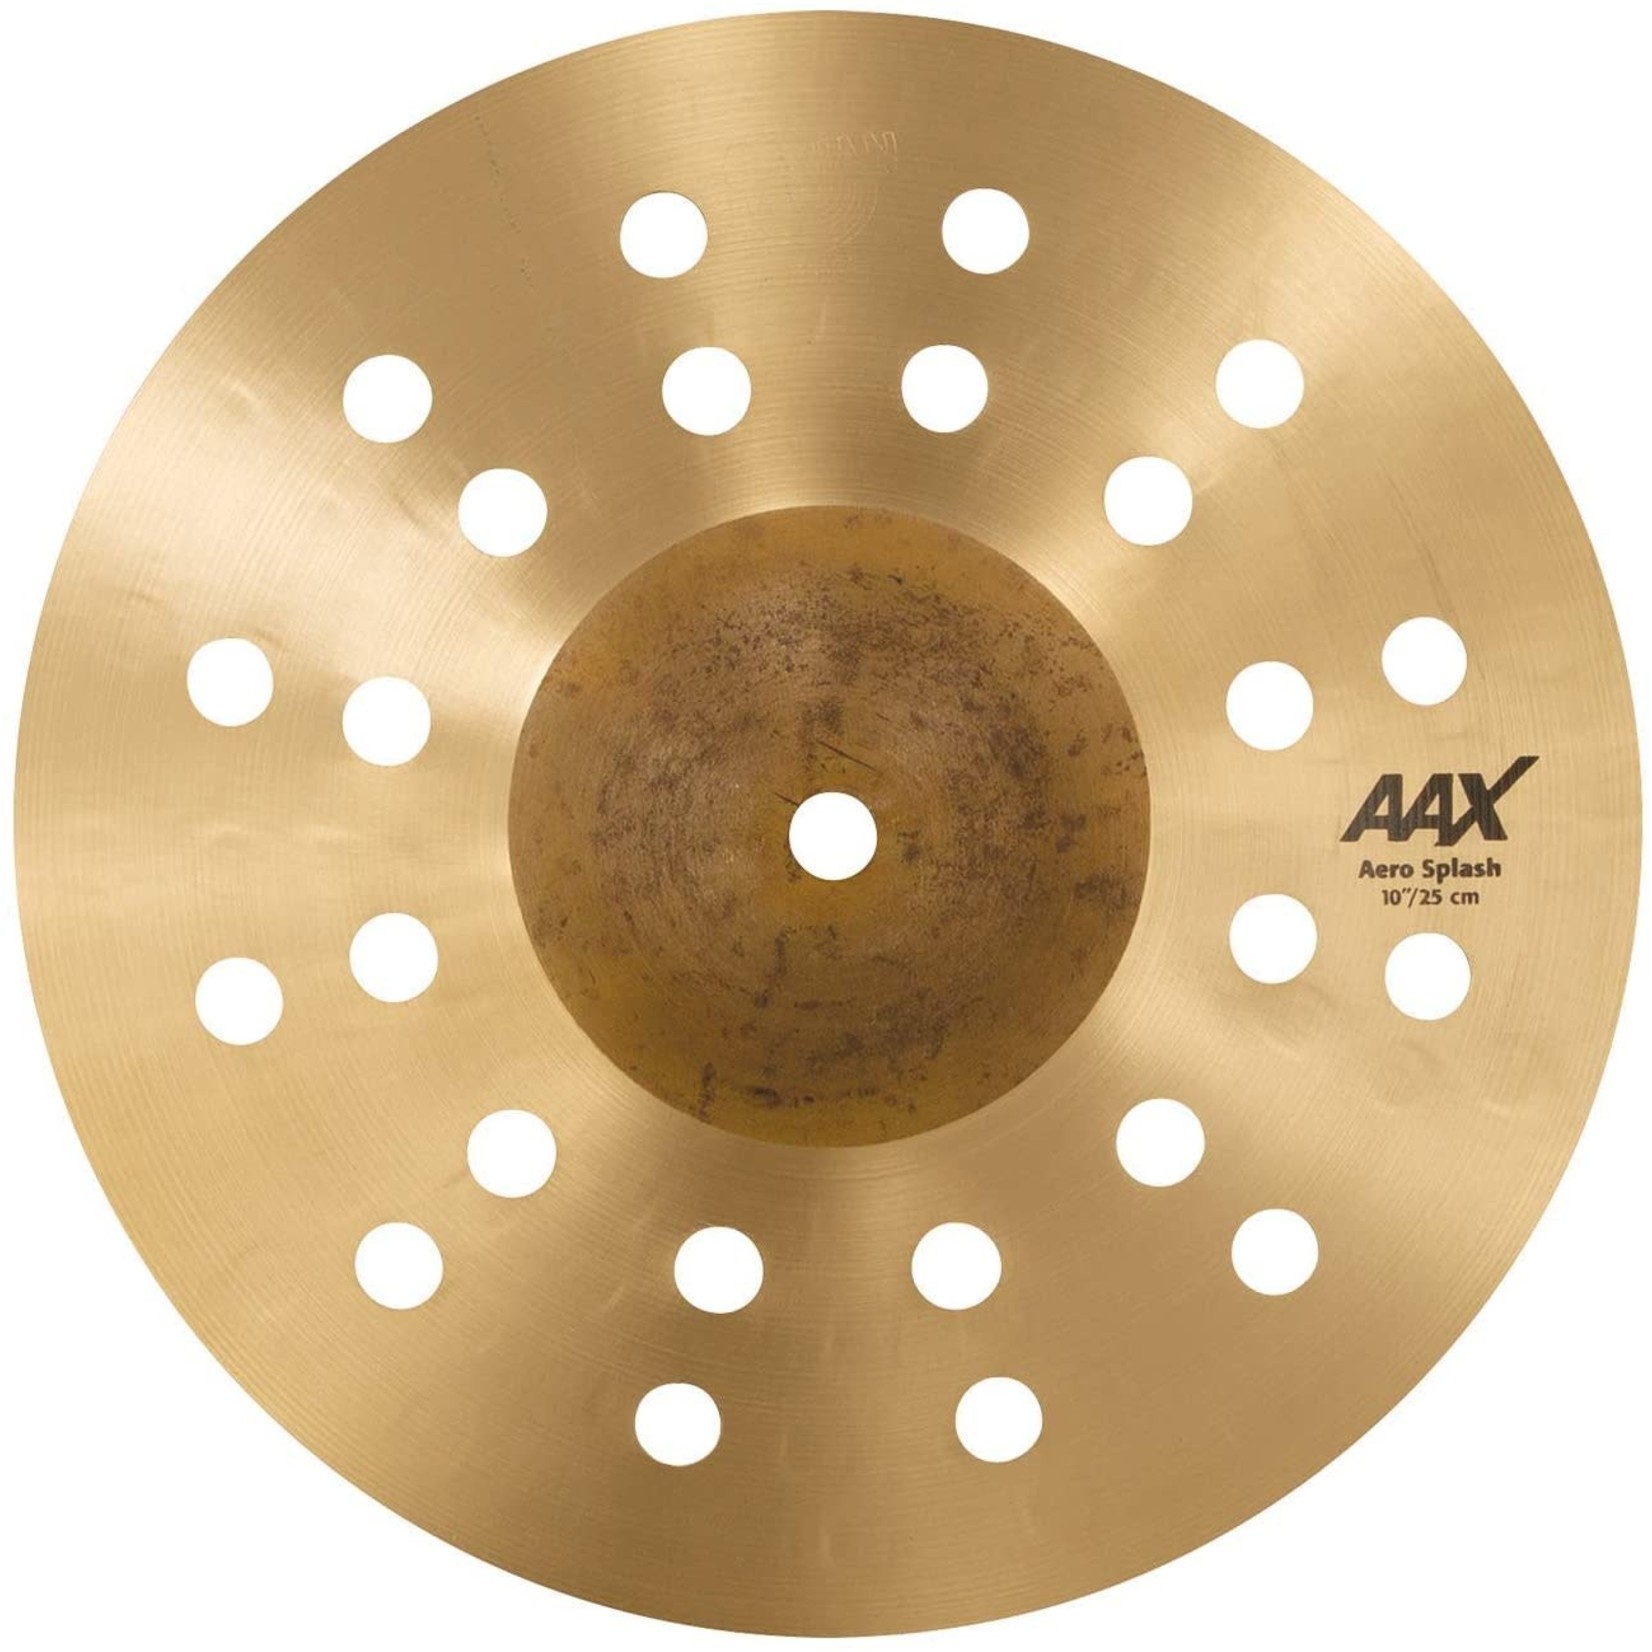 Sabian Sabian AAX 10" Aero Splash Cymbal